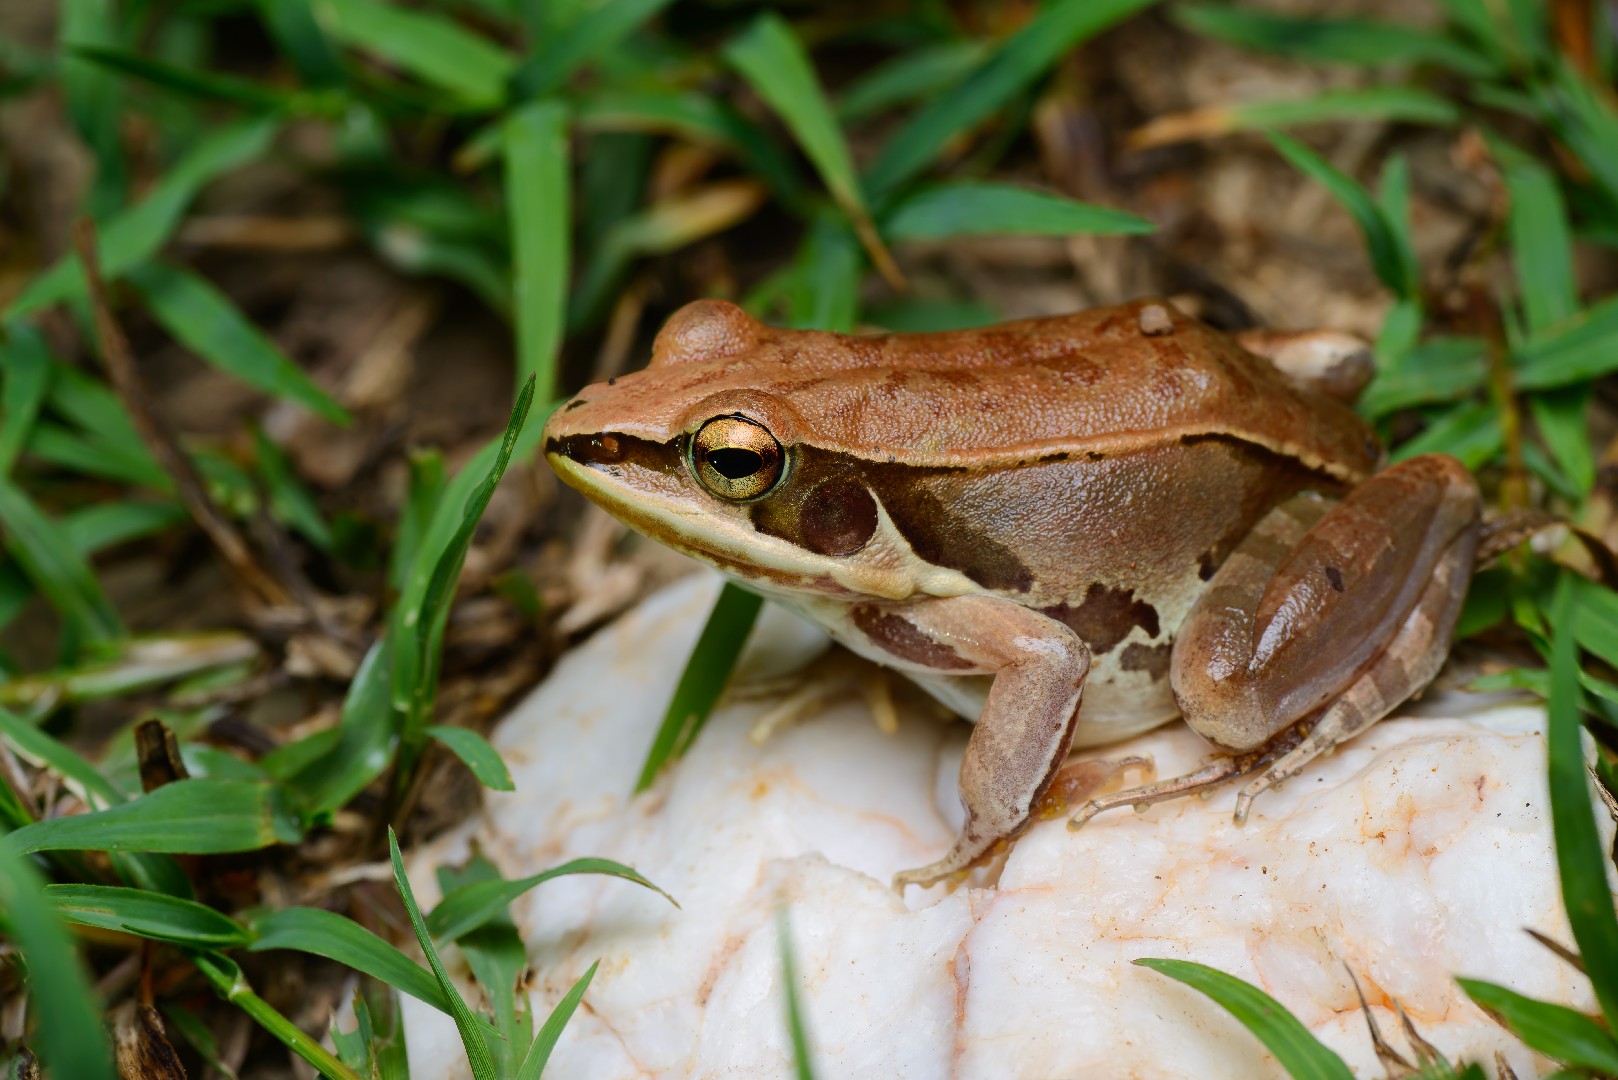 Water frogs (Pelophylax)